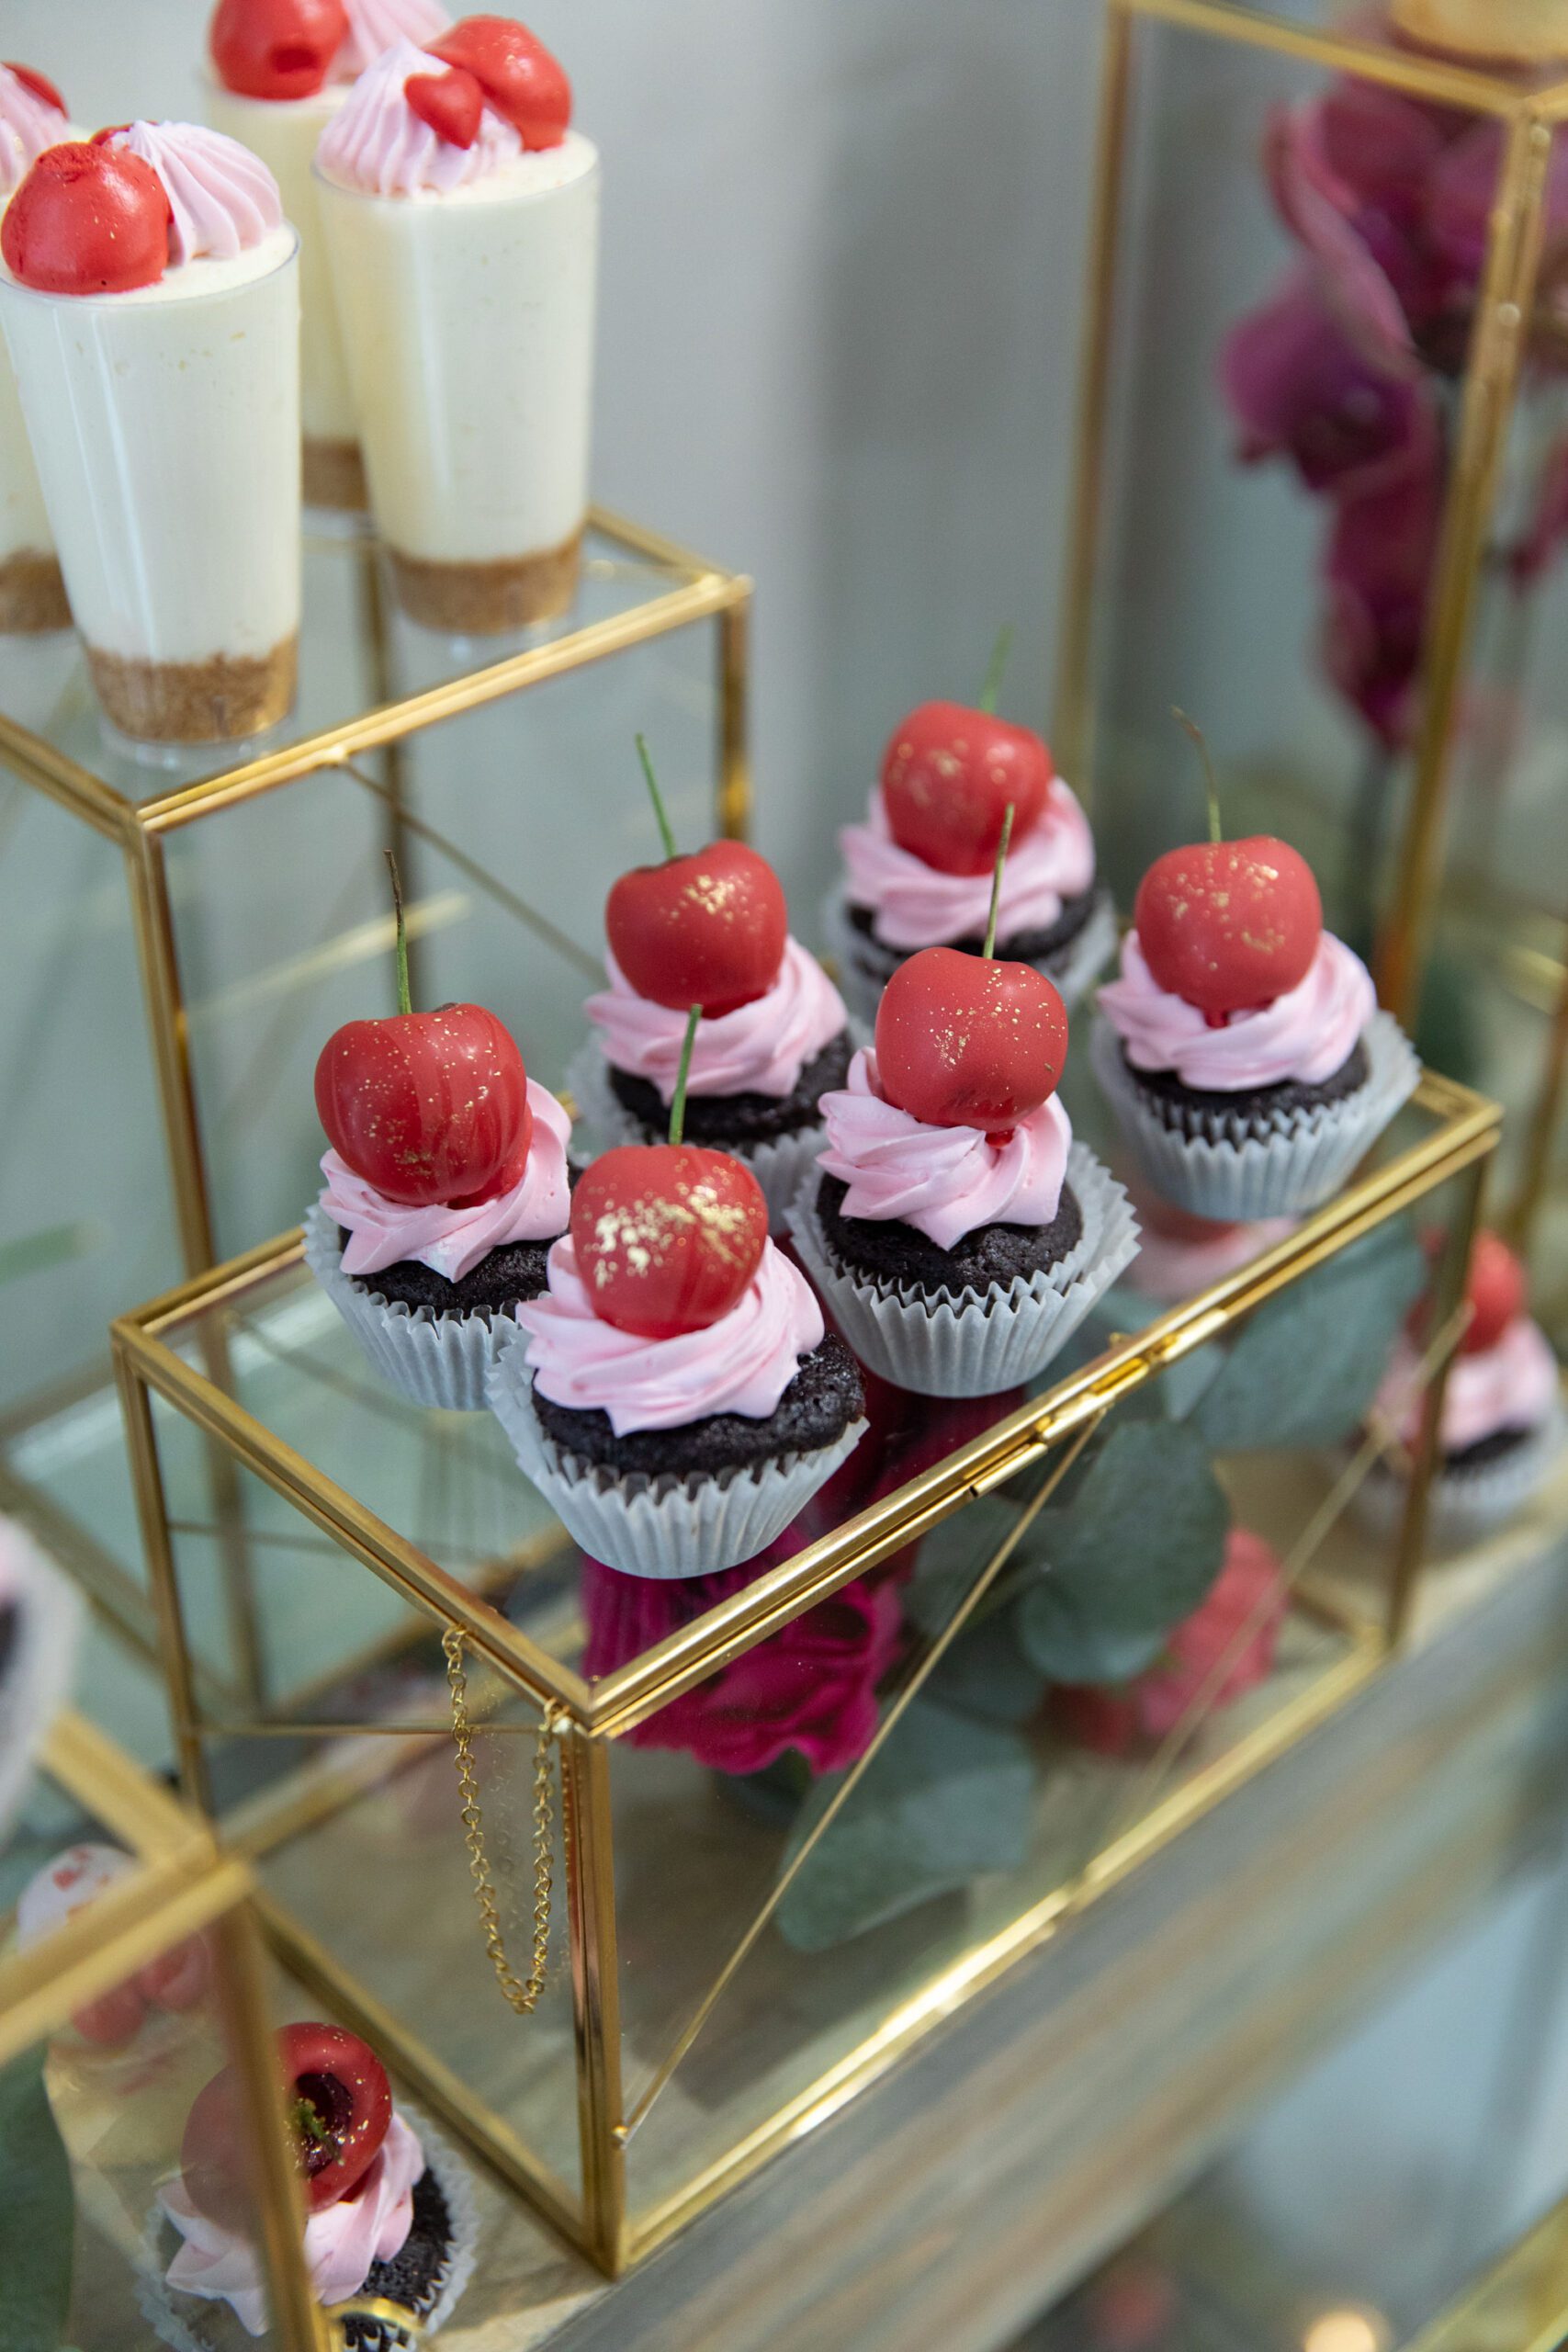 cherry cupcakes